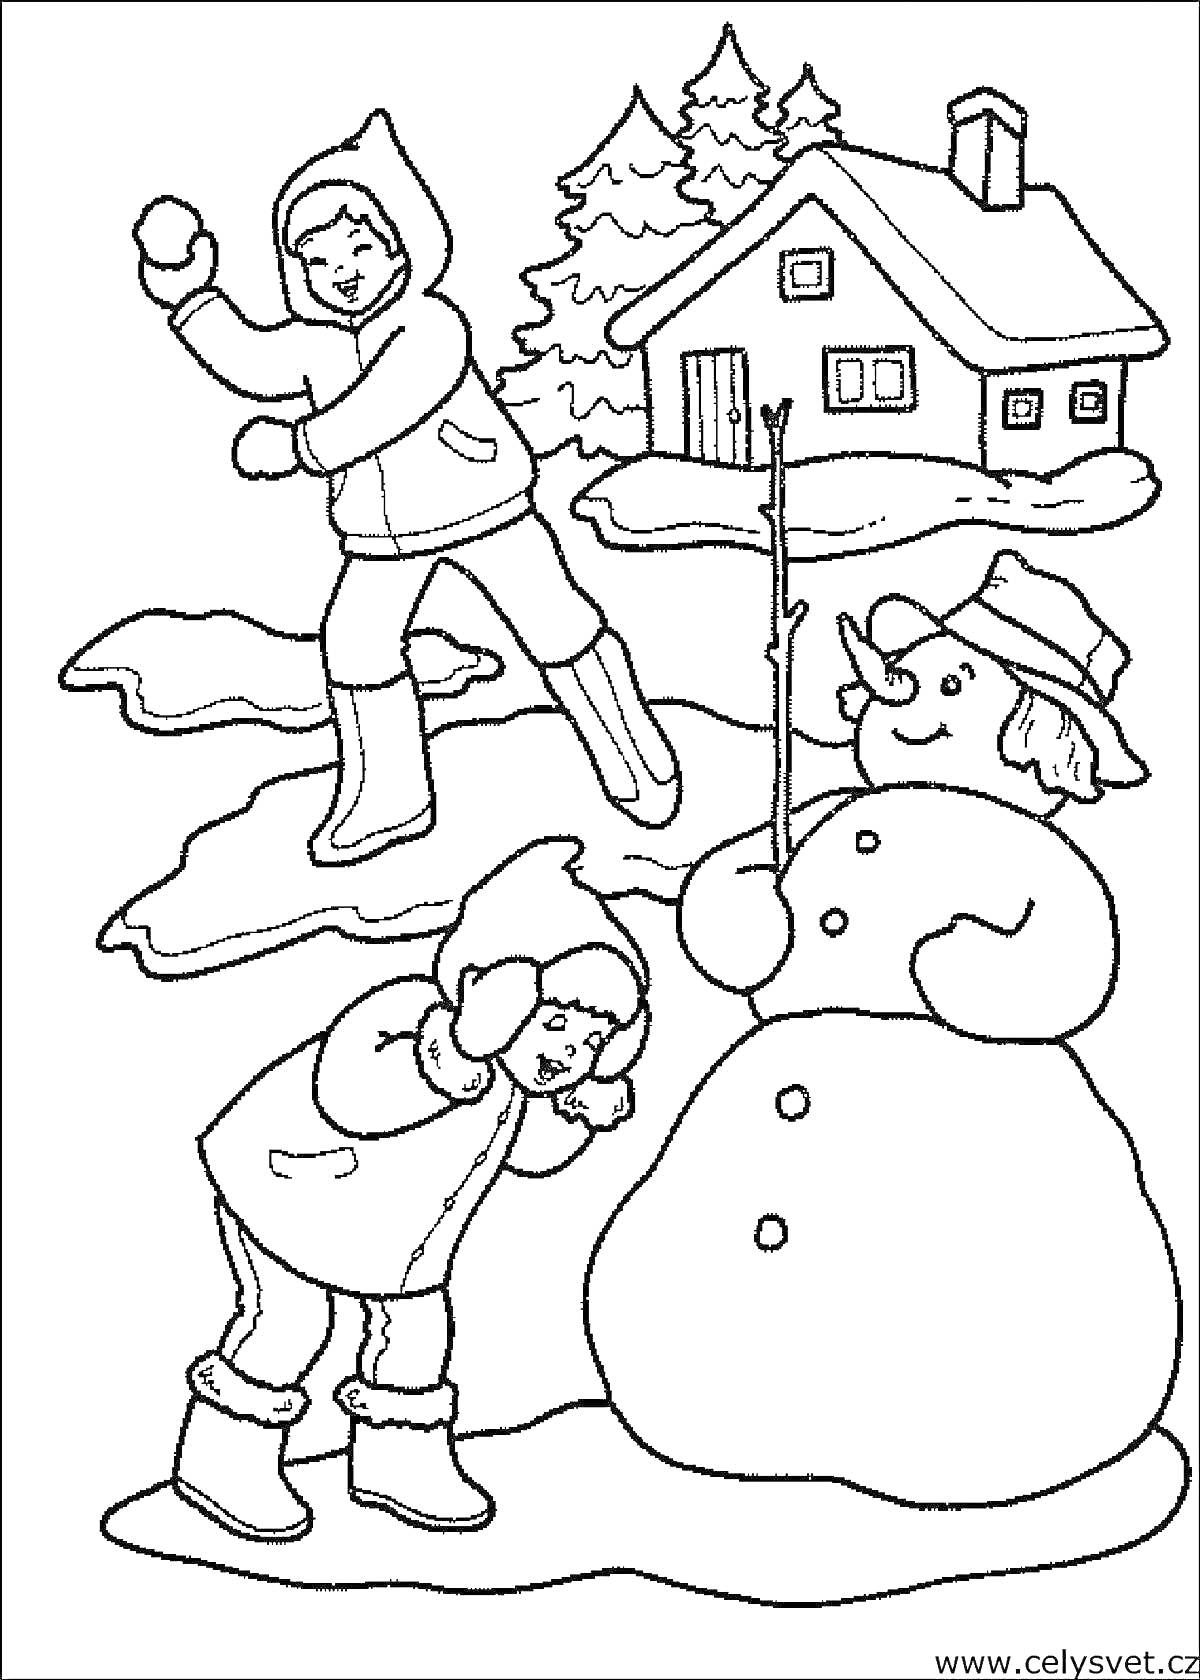 Раскраска Дети зимой, играющие в снежки, и снеговик рядом с домом и ёлками